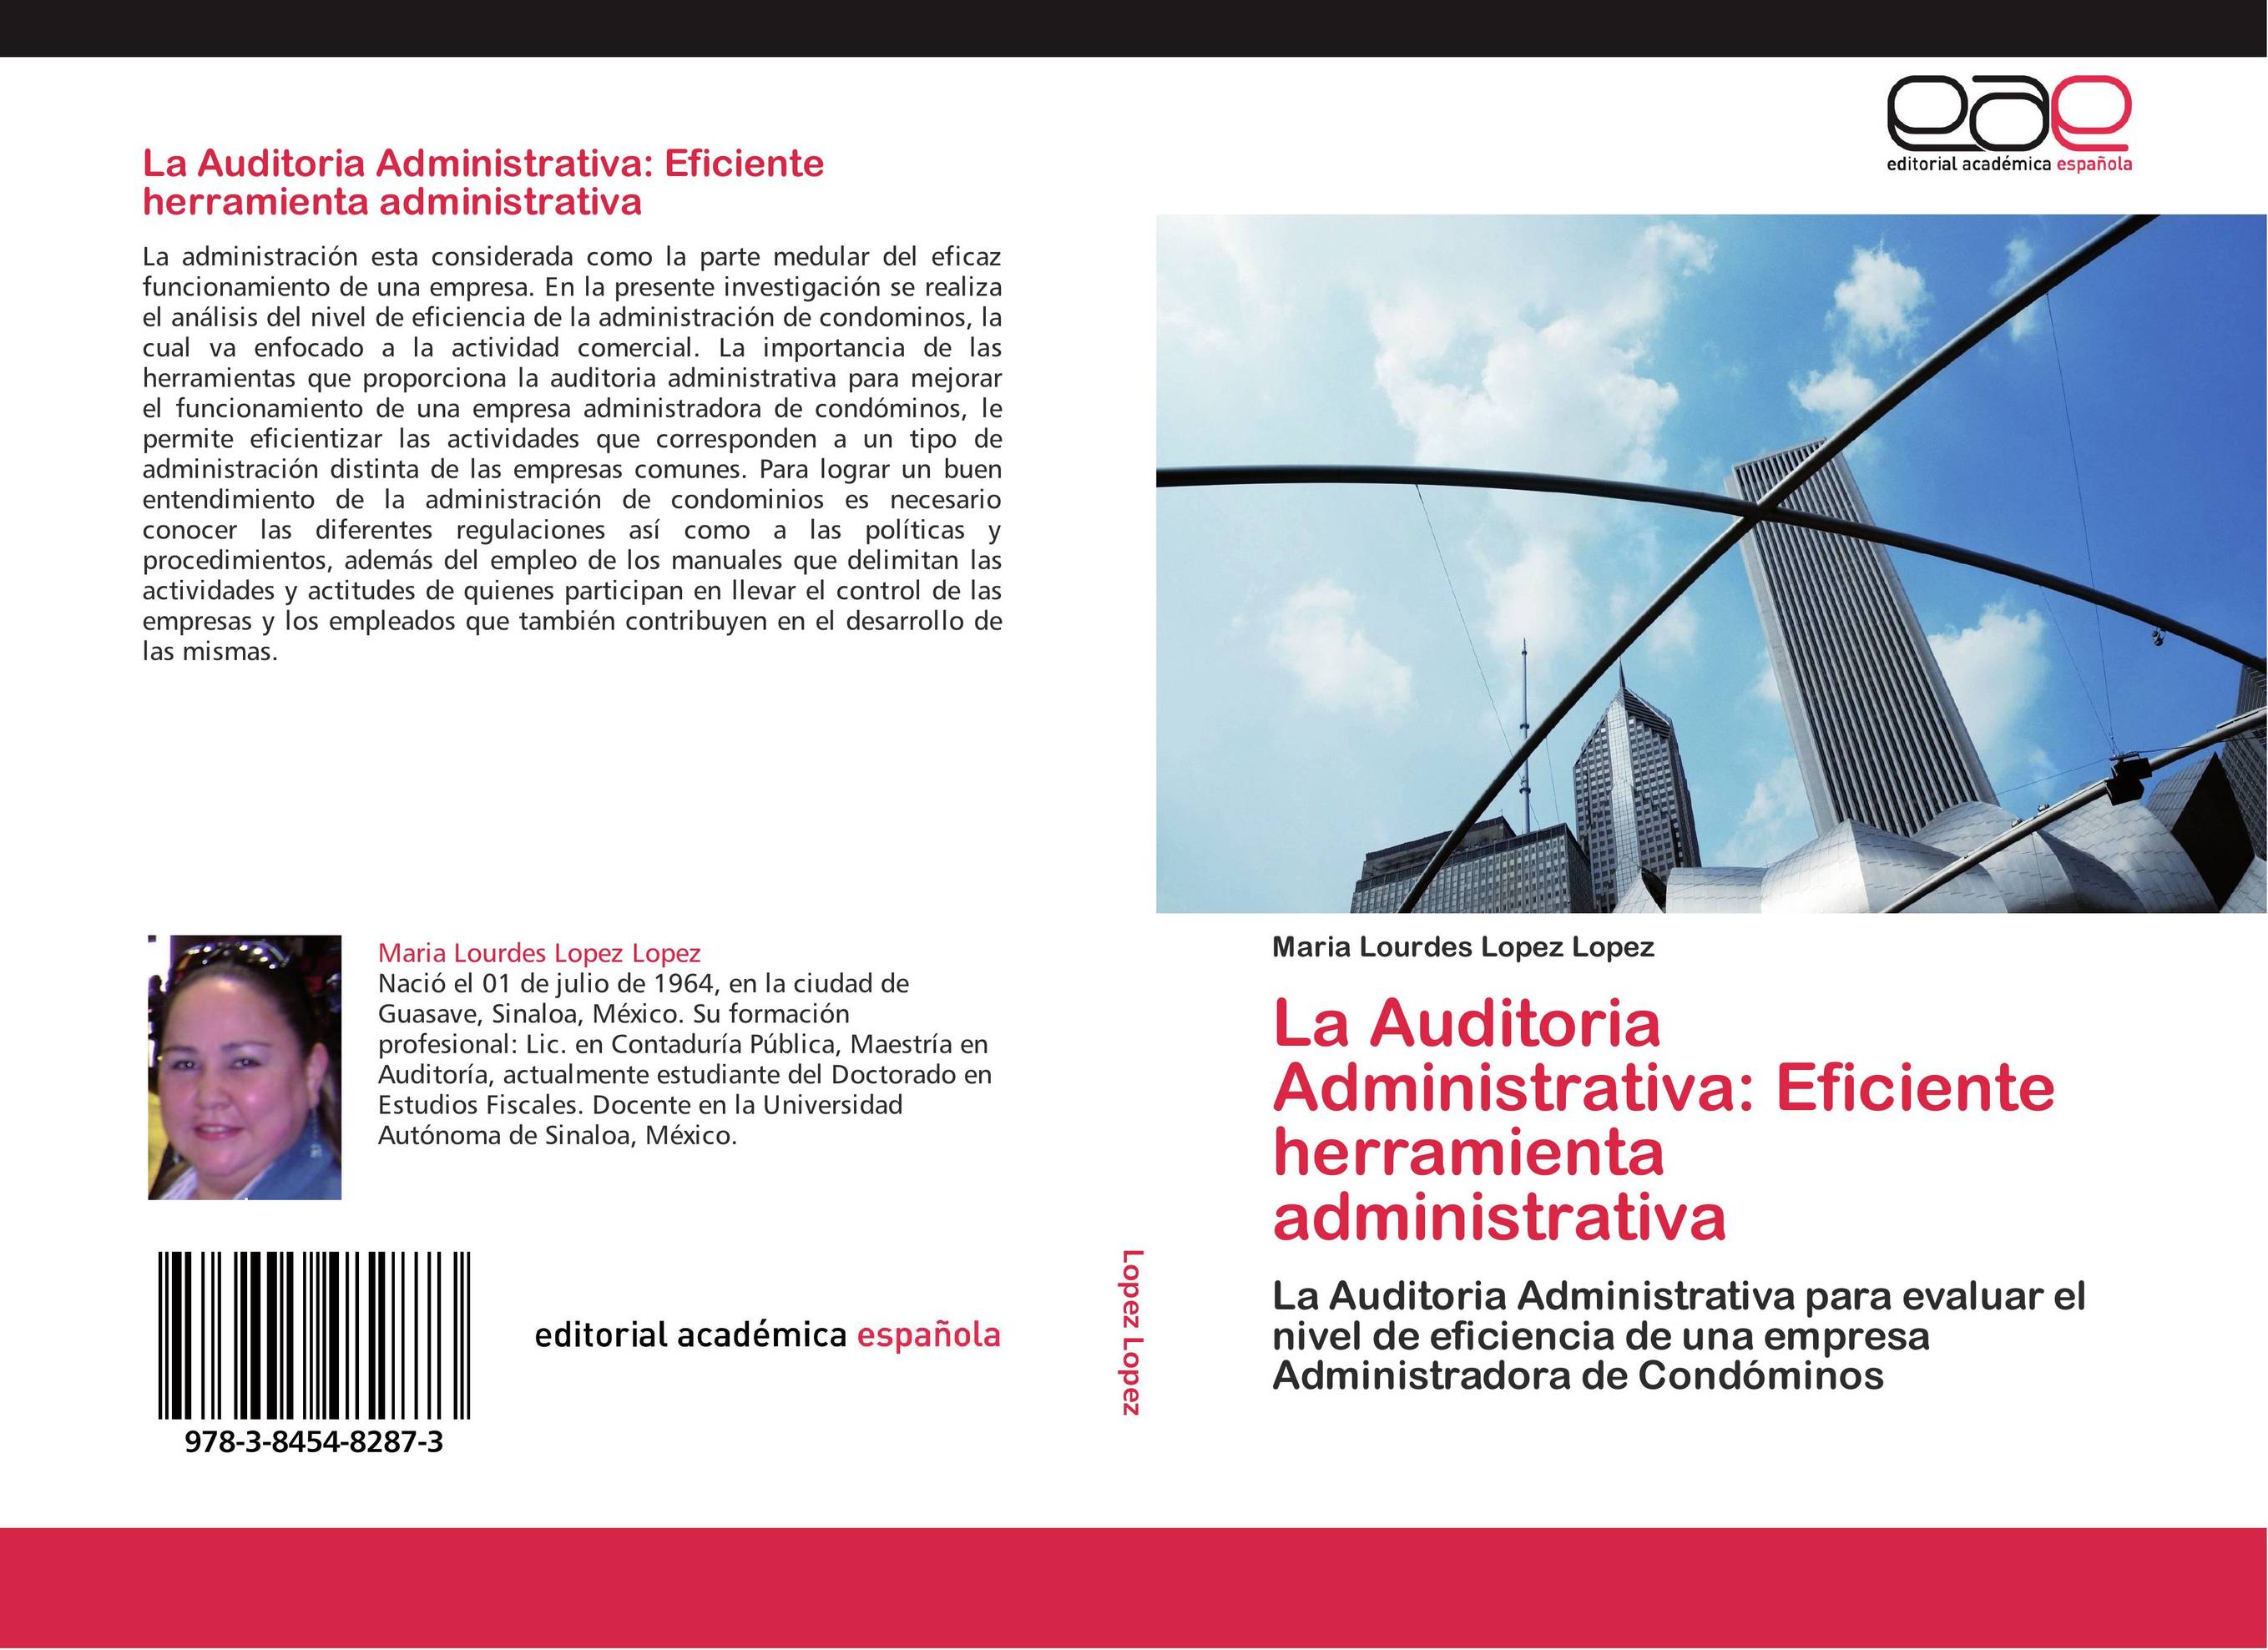 La Auditoria Administrativa: Eficiente herramienta administrativa